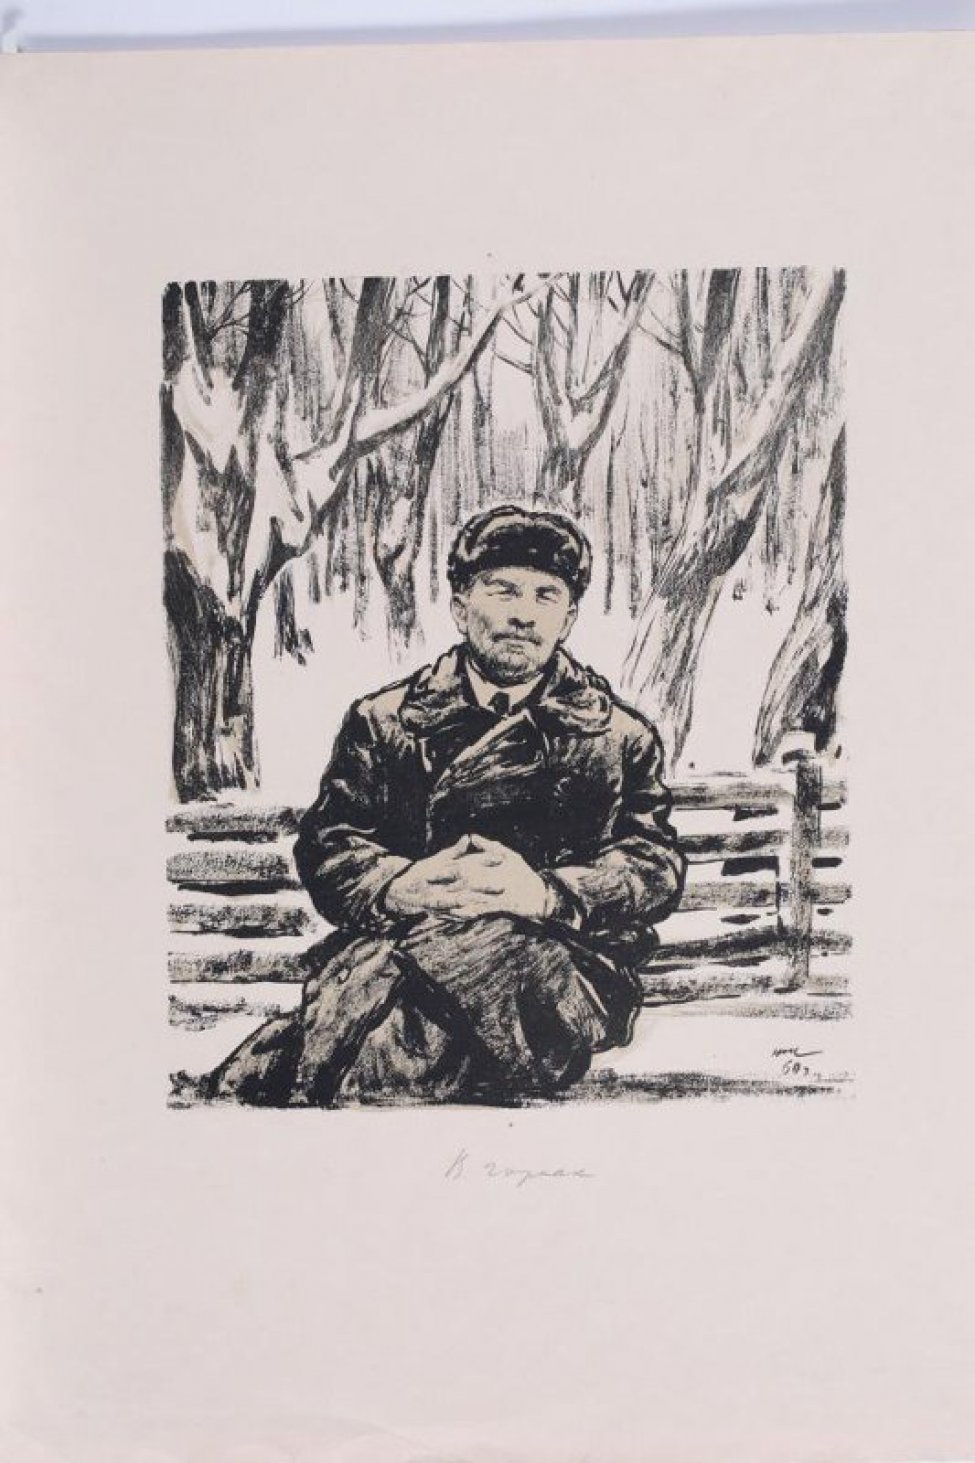 Изображен поколенно Ленин, сидящий на скамье в зимнем саду. Его фигура слегка наклонена вправо. Ленин в пальто, в шапке-ушанке; его сплетенные в пальцах руки лежат на коленях. Позади него запорошенные снегом древья.